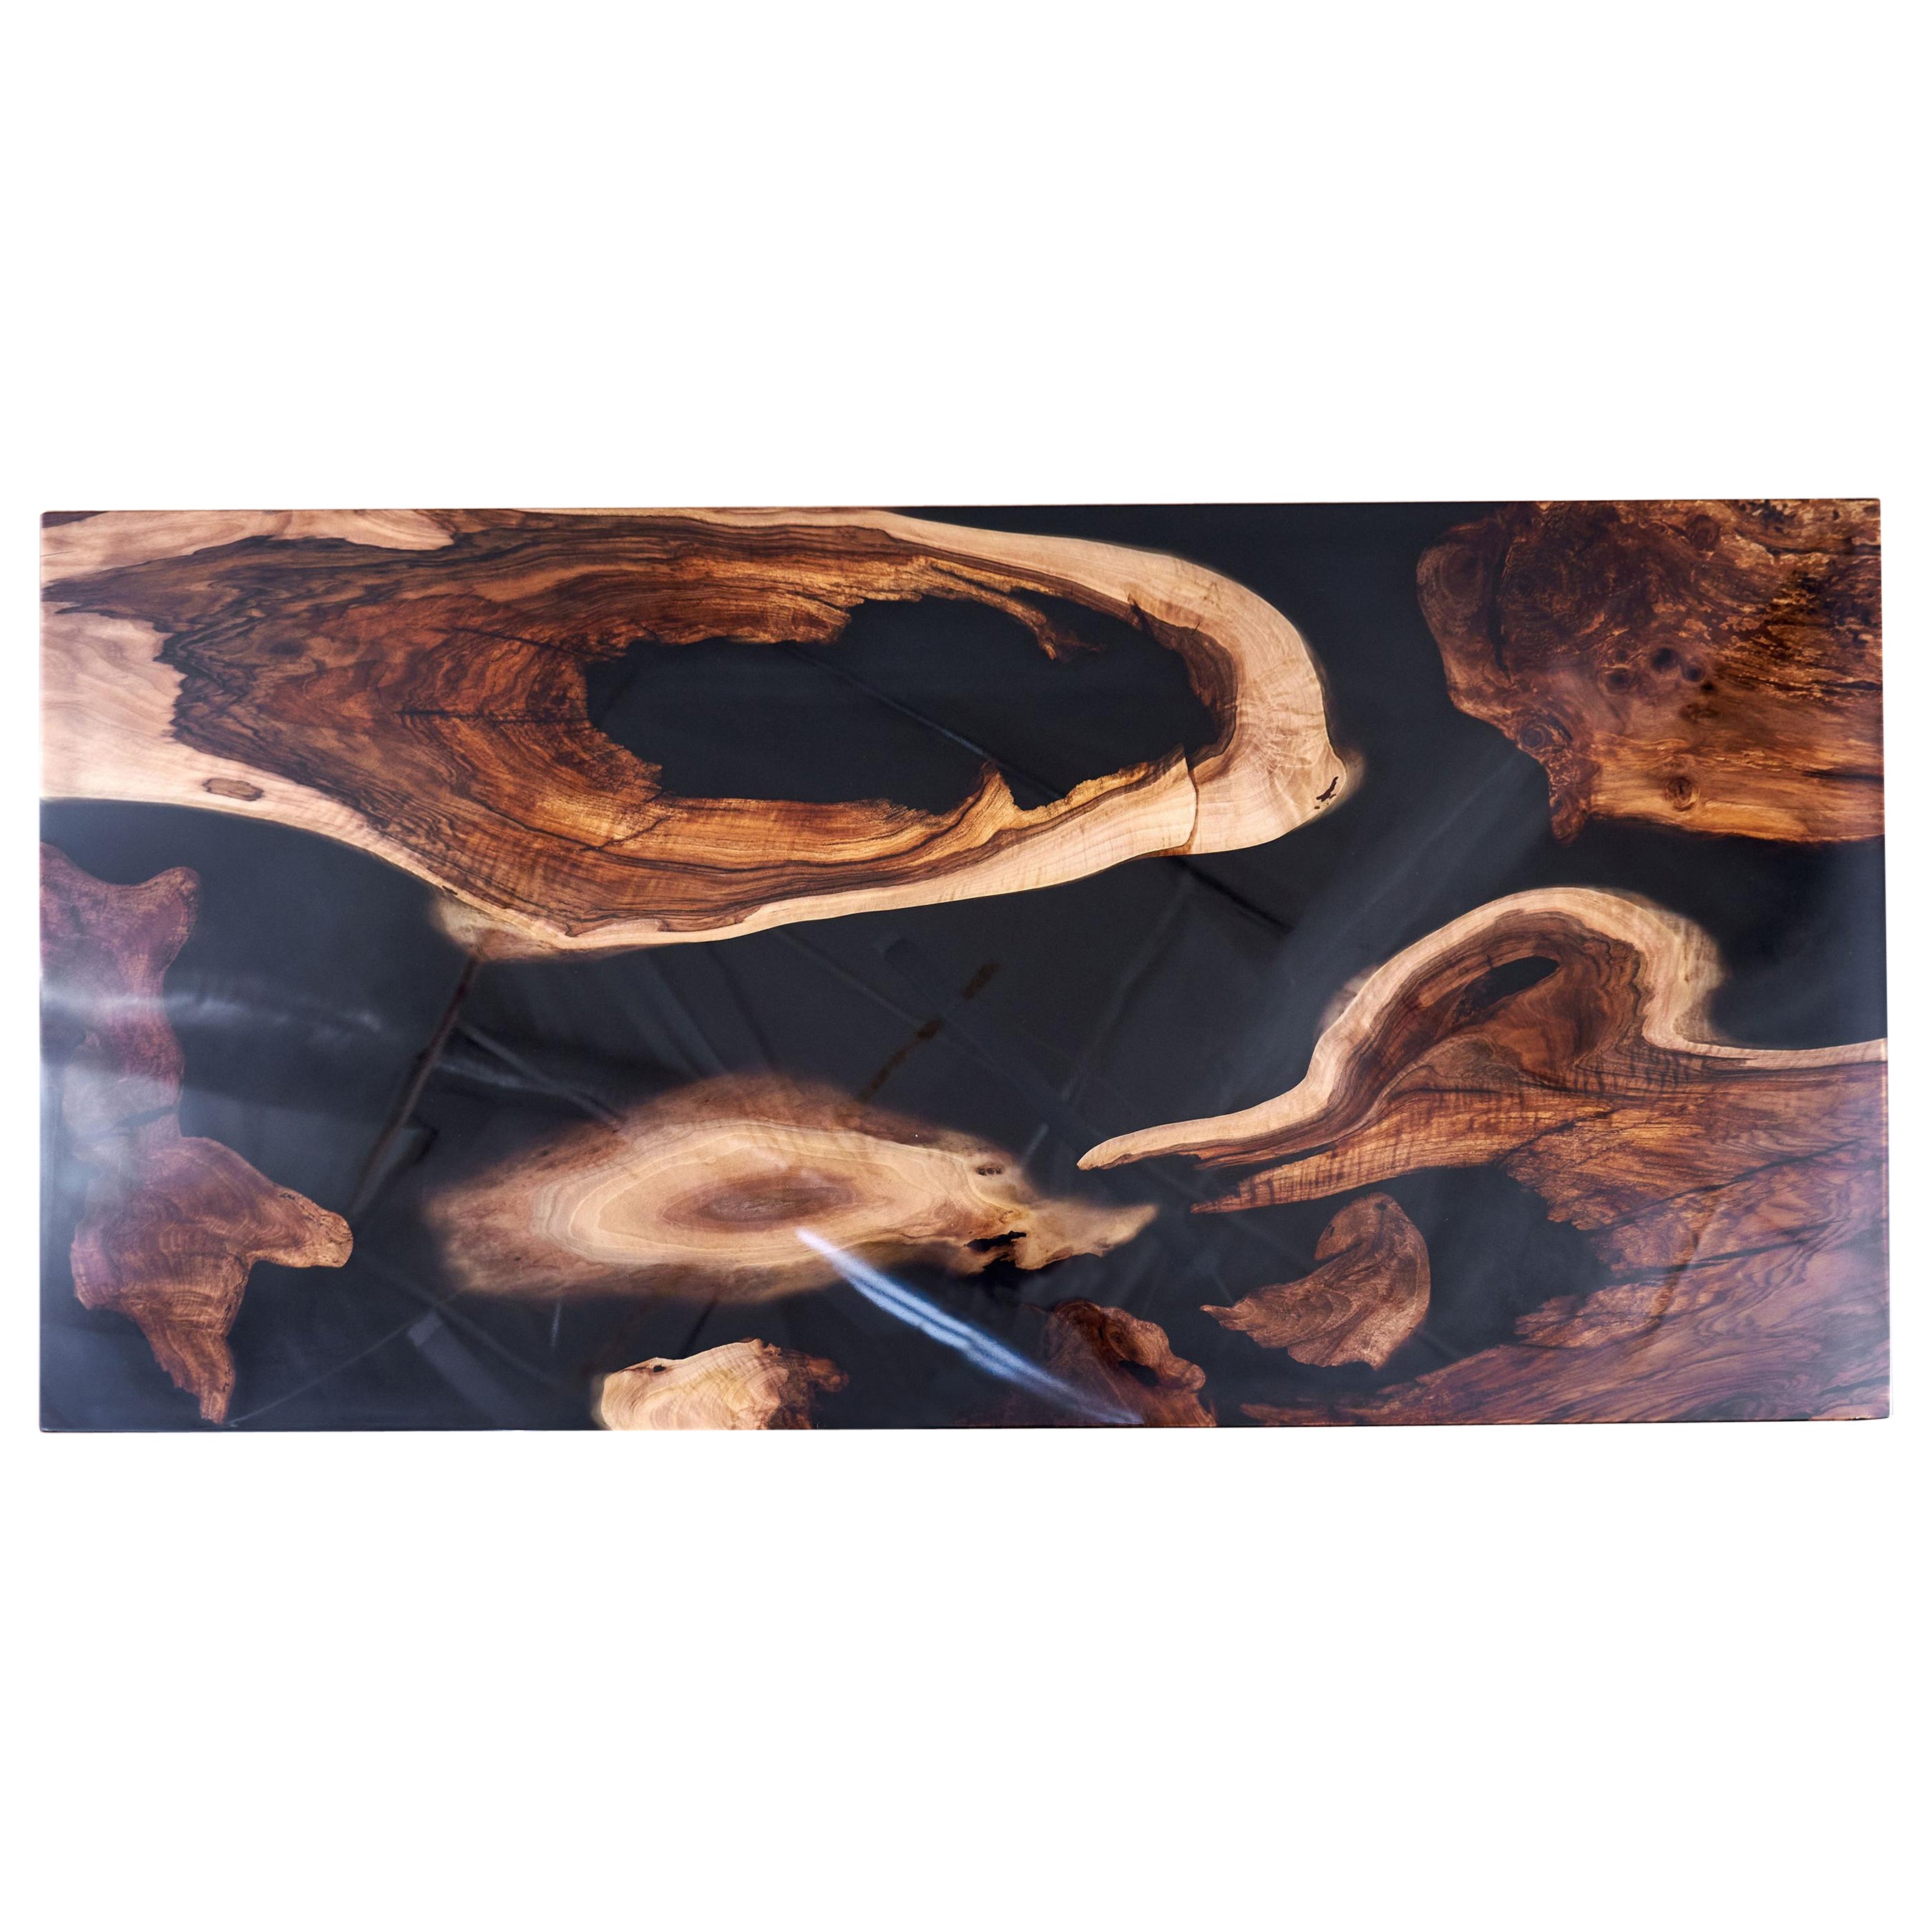 Wunderschöne alte Walnusswurzeln. Authentische Textur und Charakter der Nussbaummaserung. Von Hand nivelliert, gereinigt und mit einem schwarzen, undurchsichtigen Harz gefüllt, das sich perfekt mit den Nusswurzeln verbindet. Zusätzliche